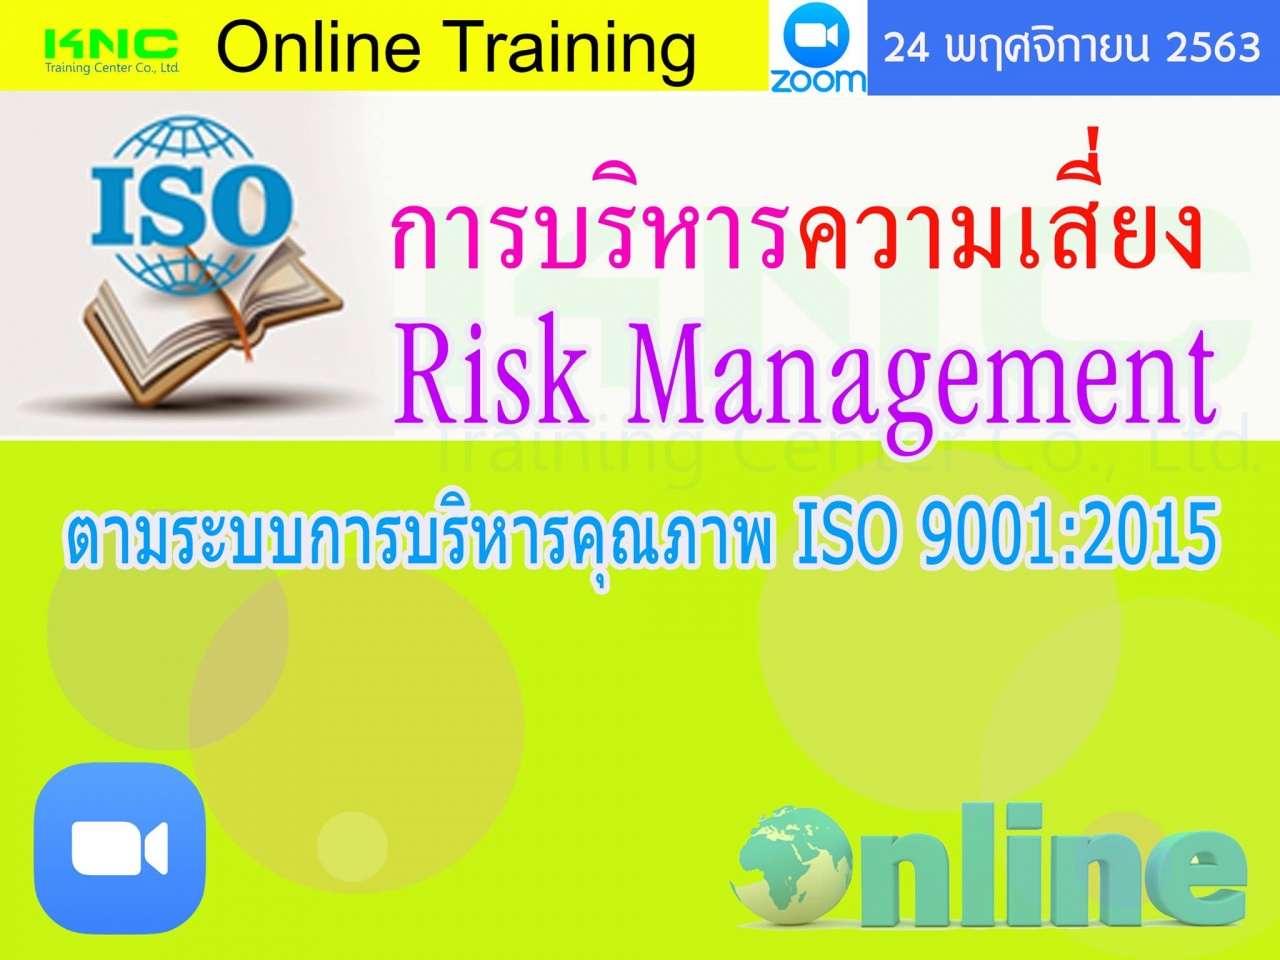 สัมมนา Online : การบริหารความเสี่ยง Risk Management ตามระบบการบริหารคุณภาพ ISO 9001:2015